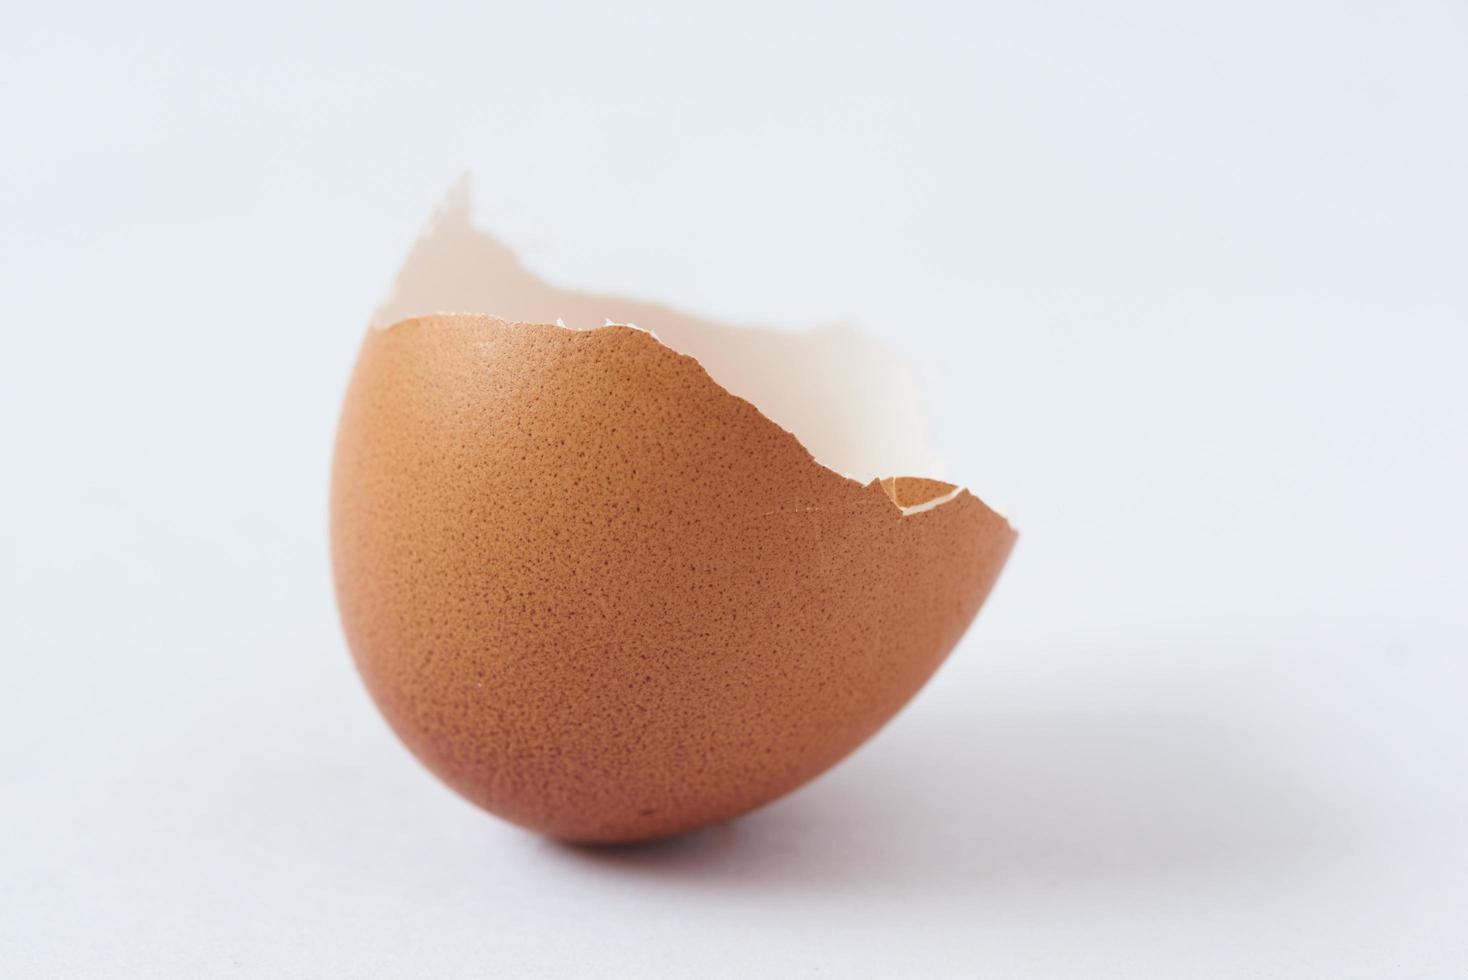 gebroken eierschaal op witte achtergrond foto